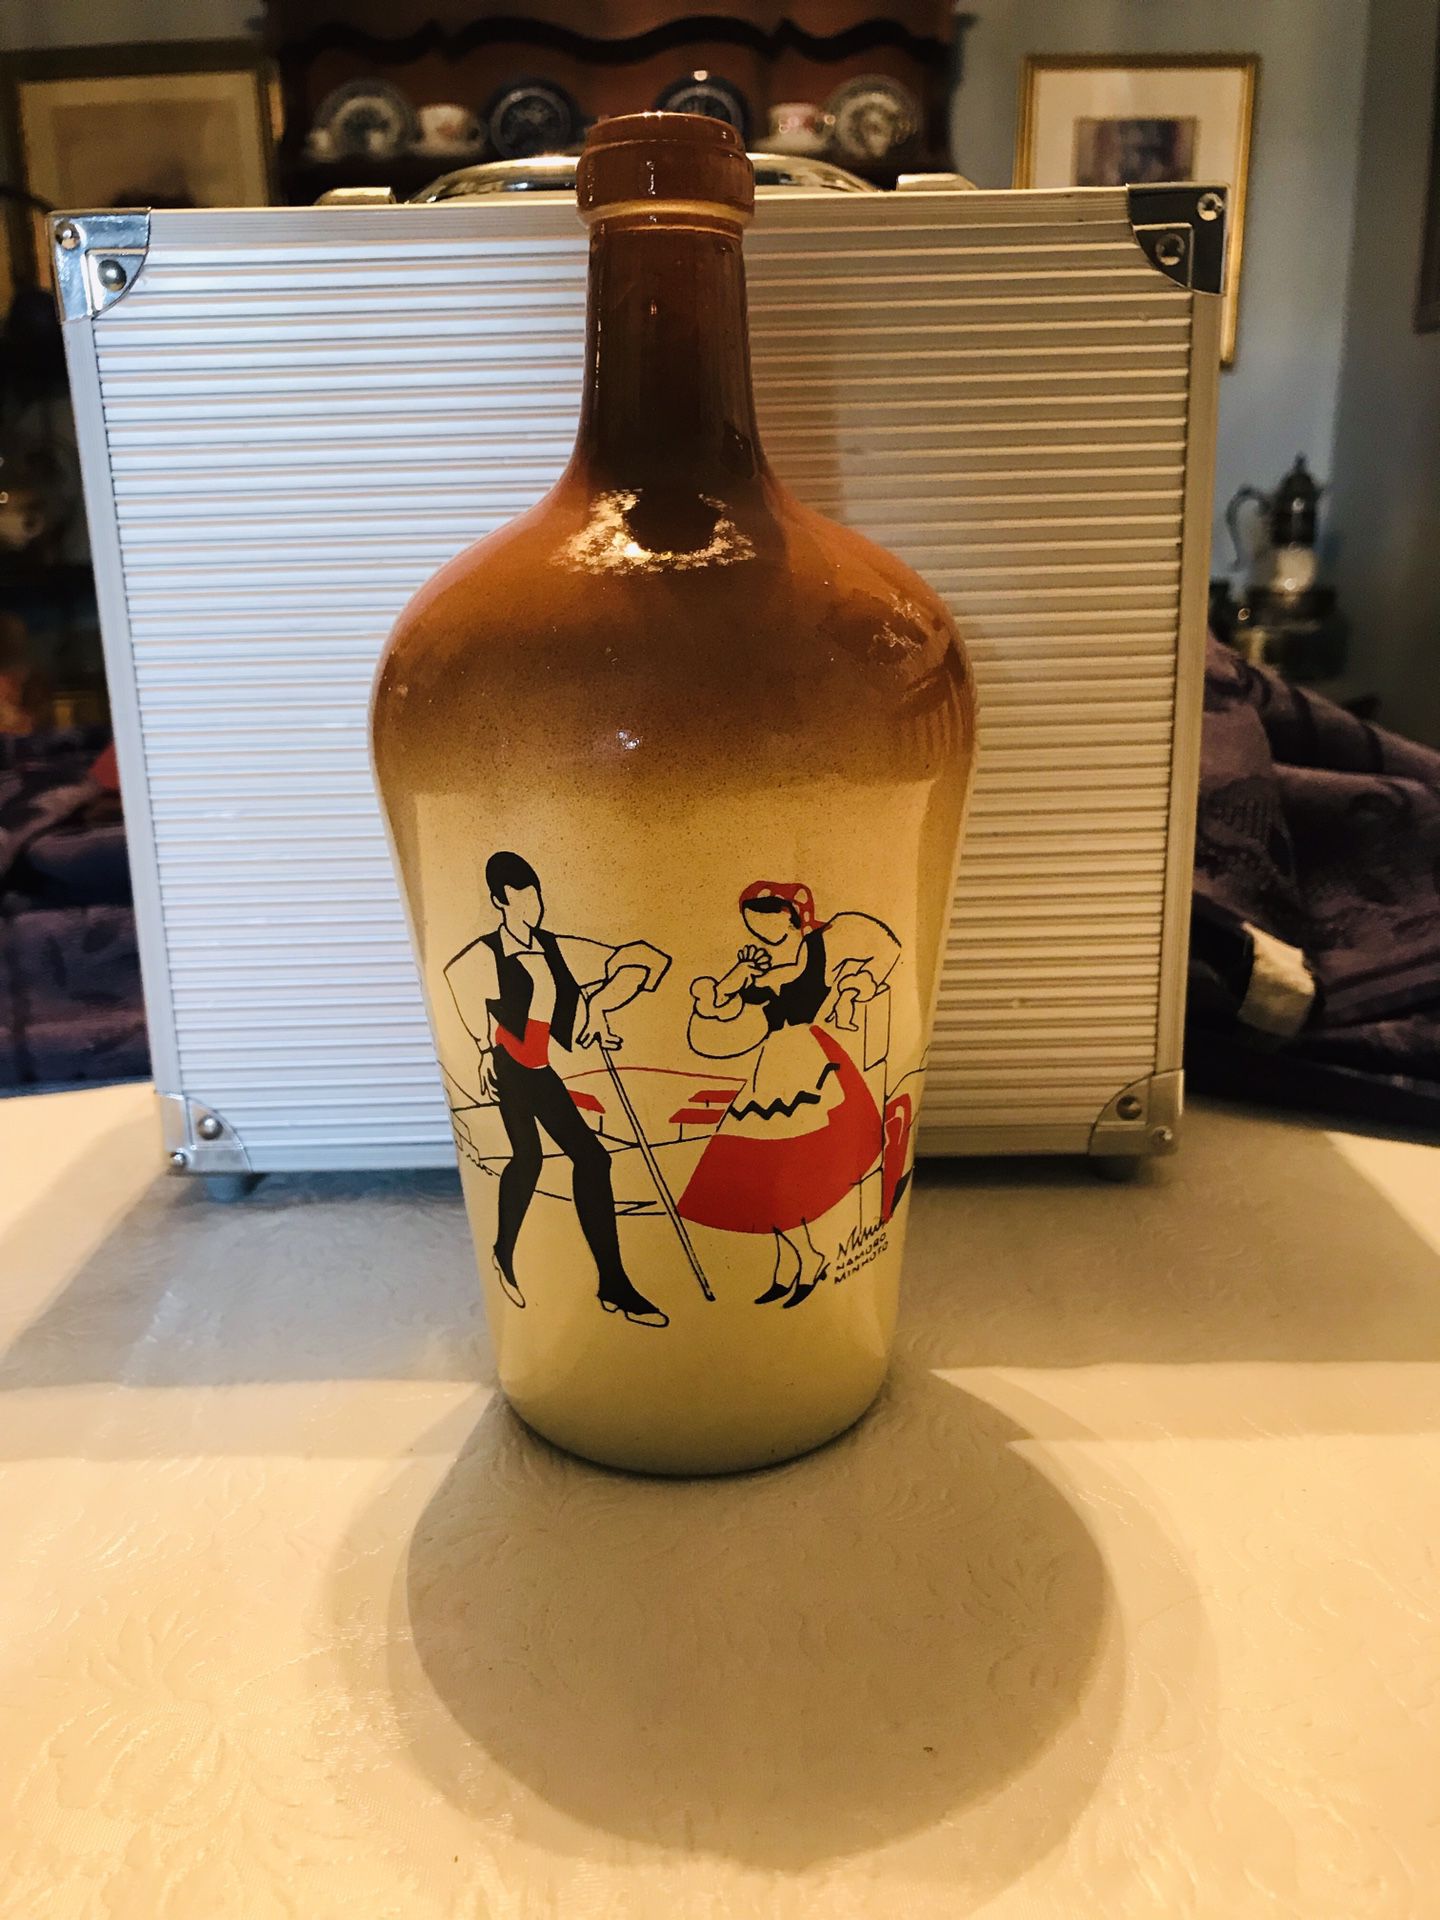 Vintage Portuguese Art on a bottle